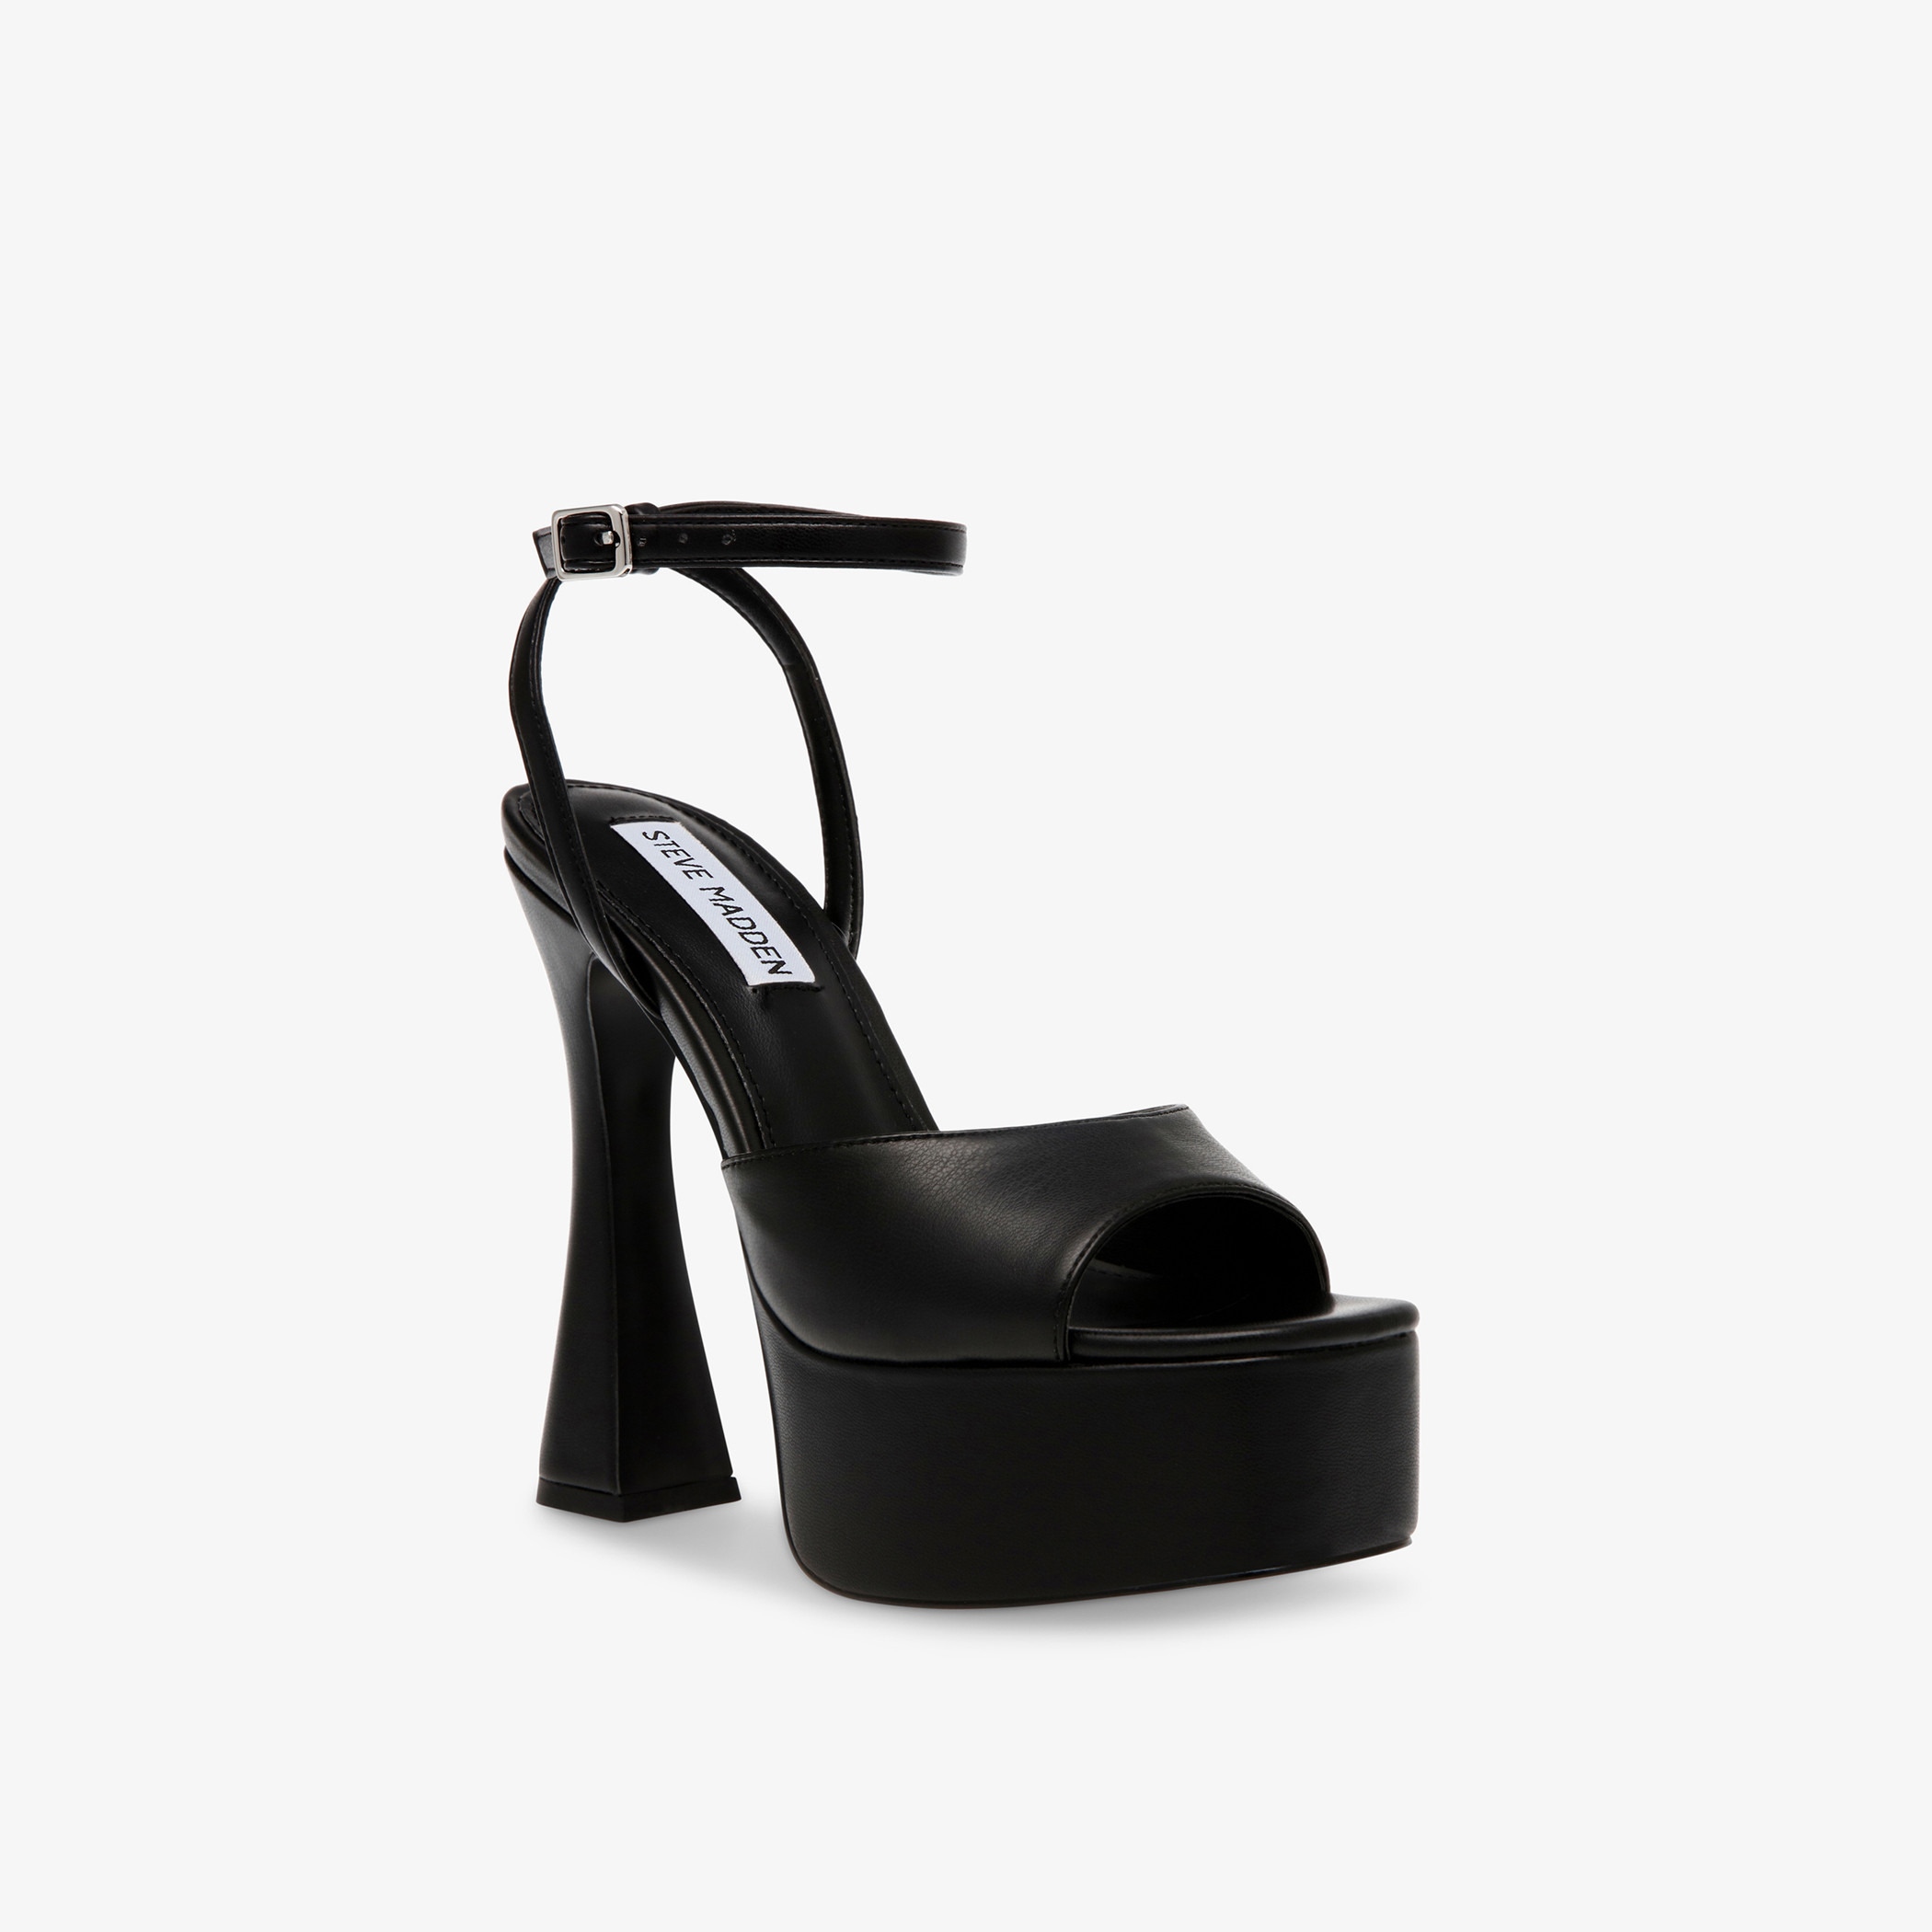 ZIPPEDY BLUE PATENT Platform Heels | Buy Women's HEELS Online | Novo Shoes  NZ